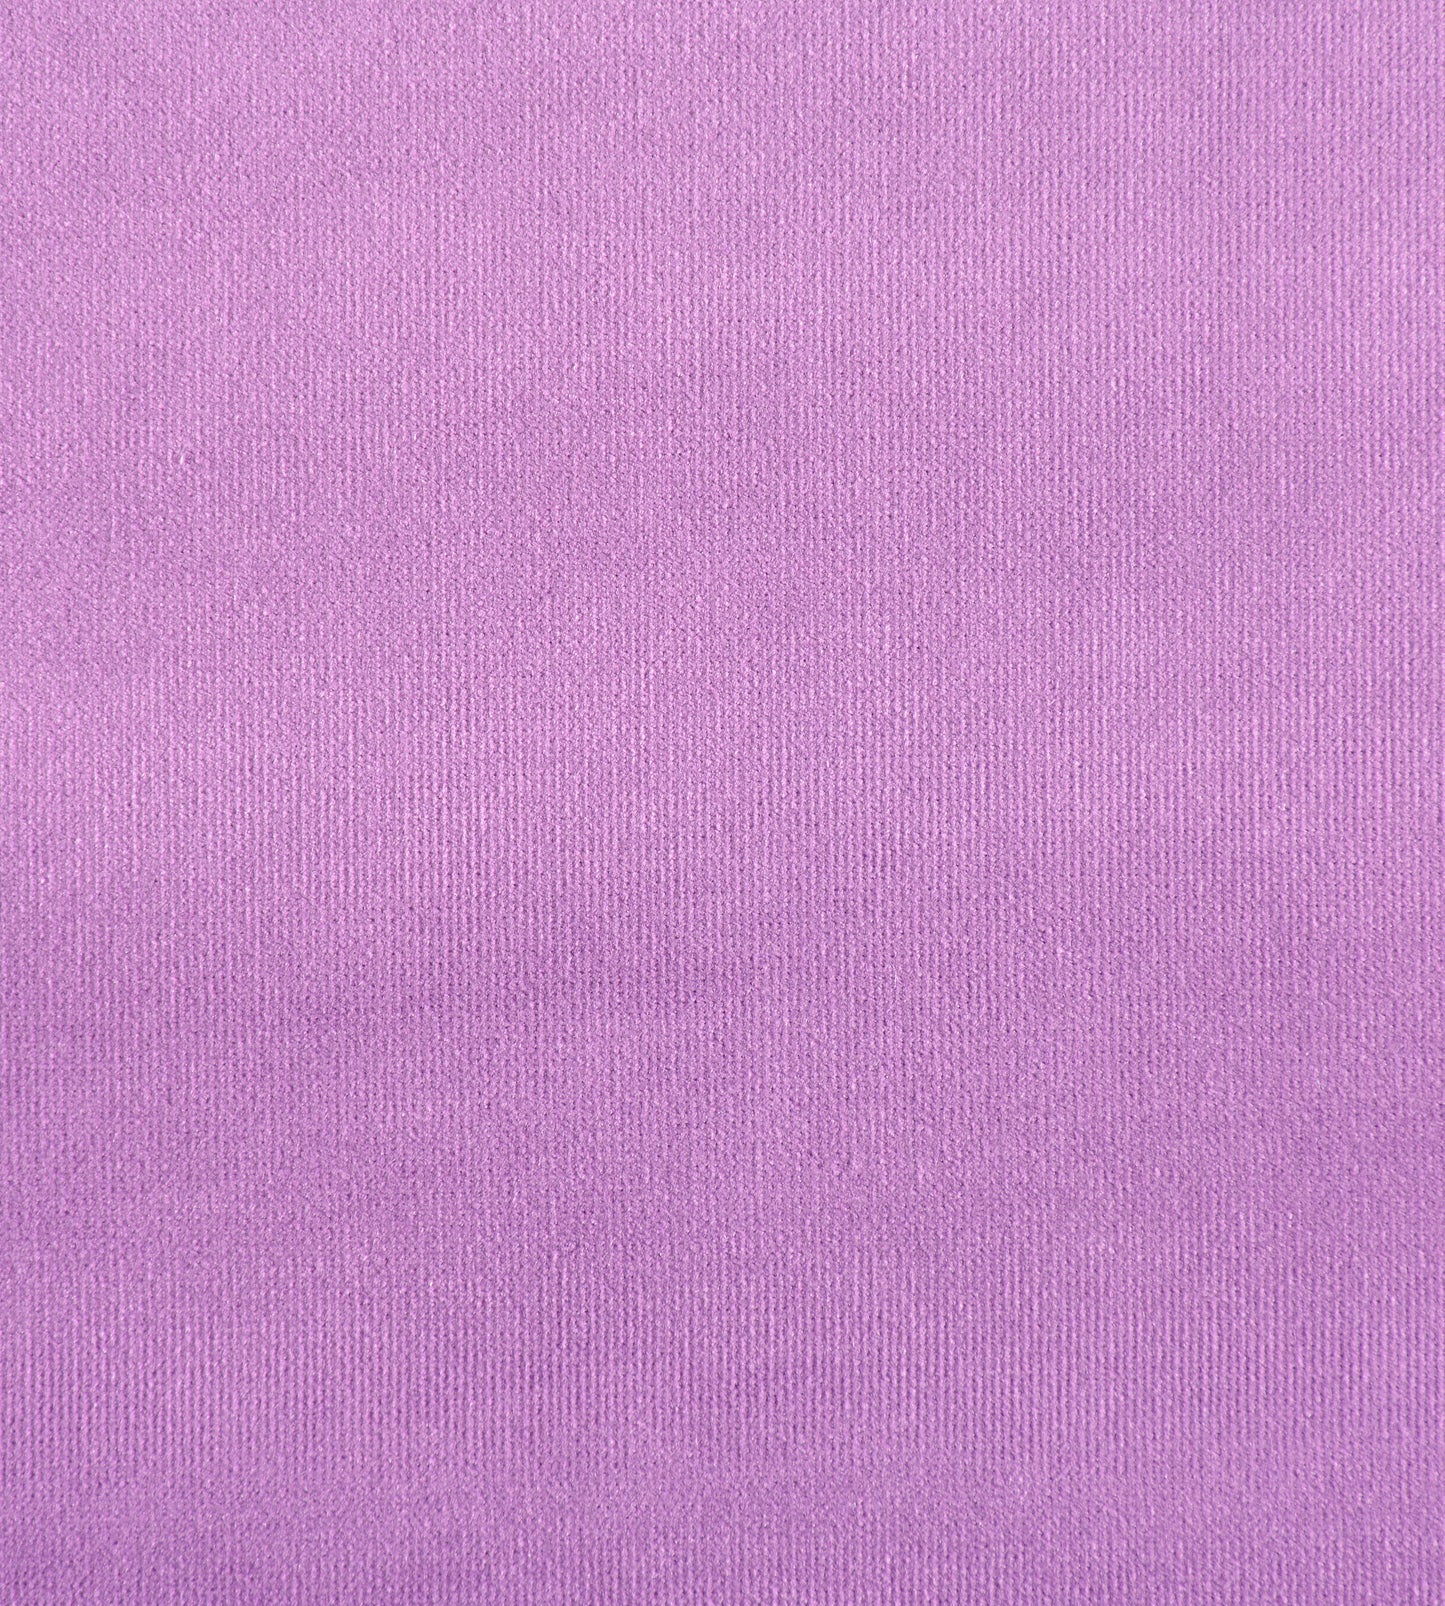 Purchase Old World Weavers Fabric Pattern number VP 0870GLAM, Glamour Velvet Grape 1